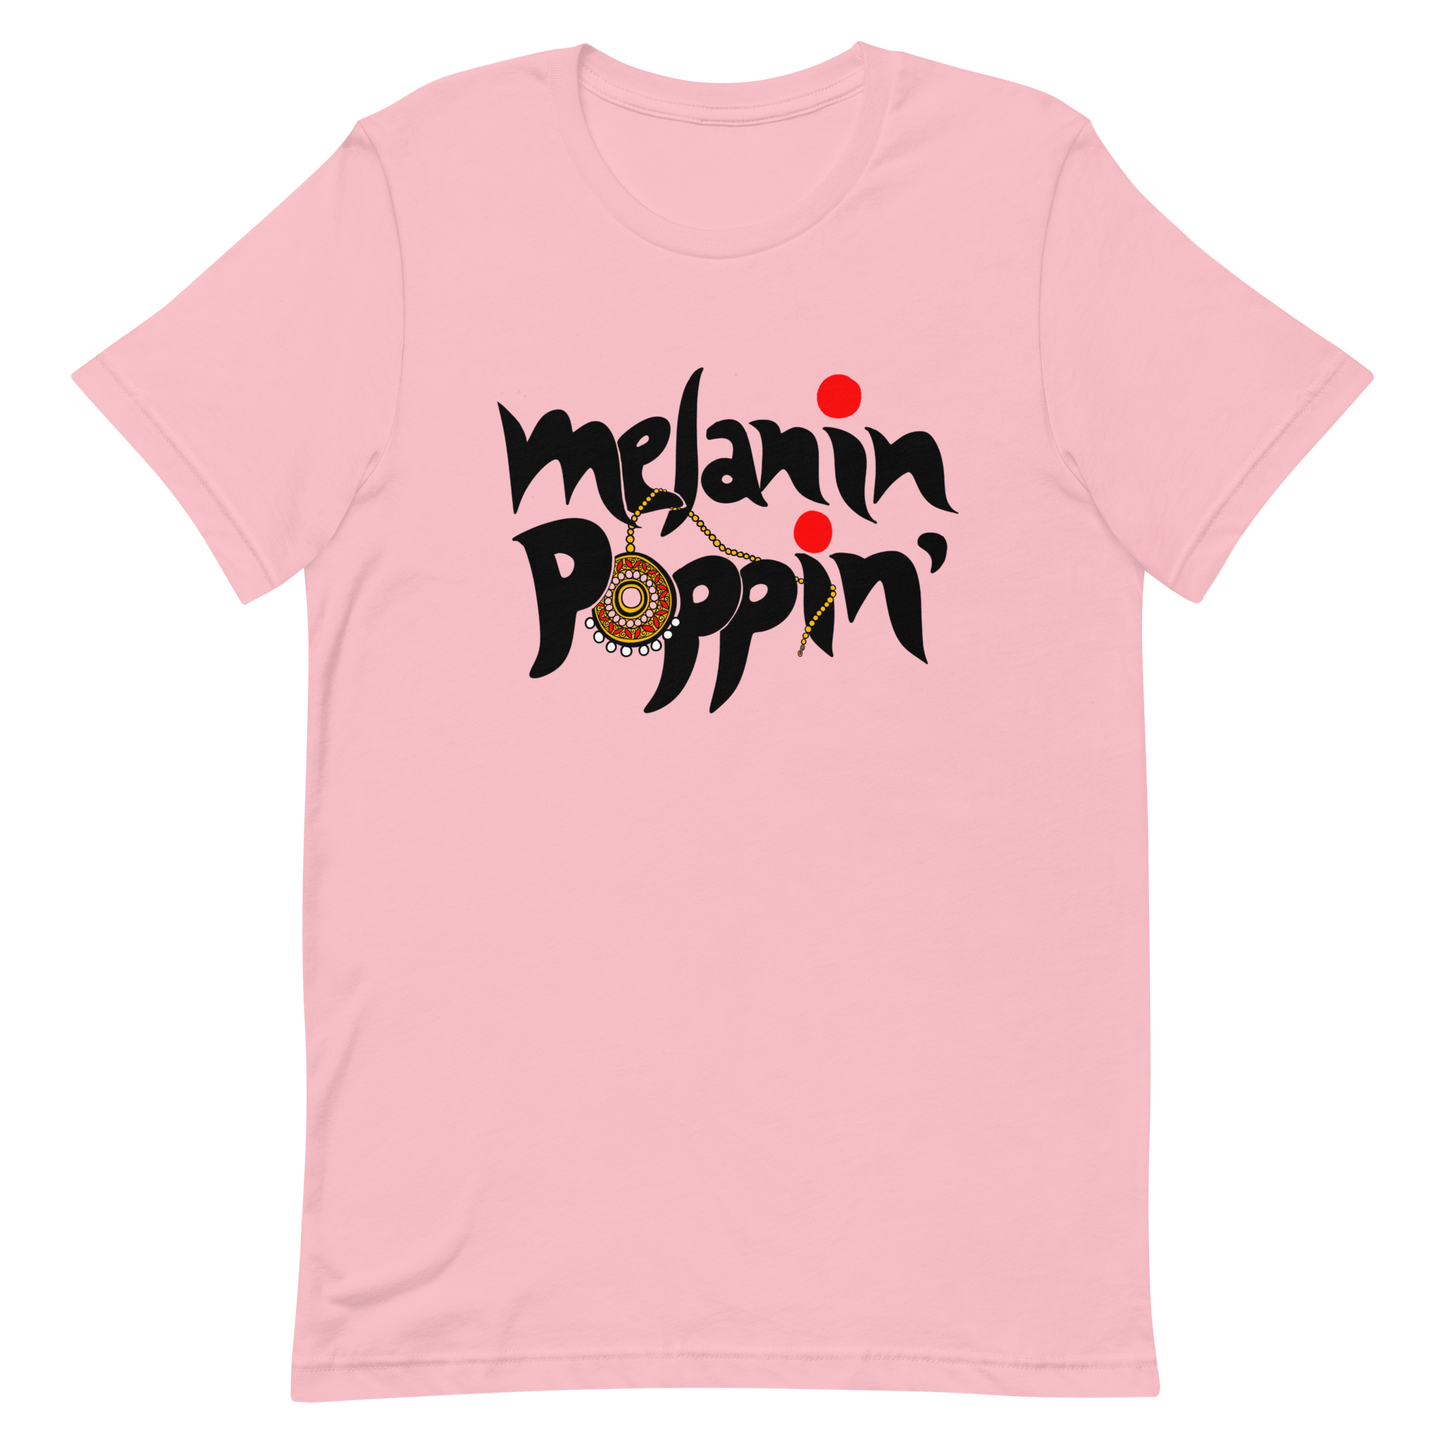 Melanin Poppin' - Short-Sleeve Unisex T-Shirt